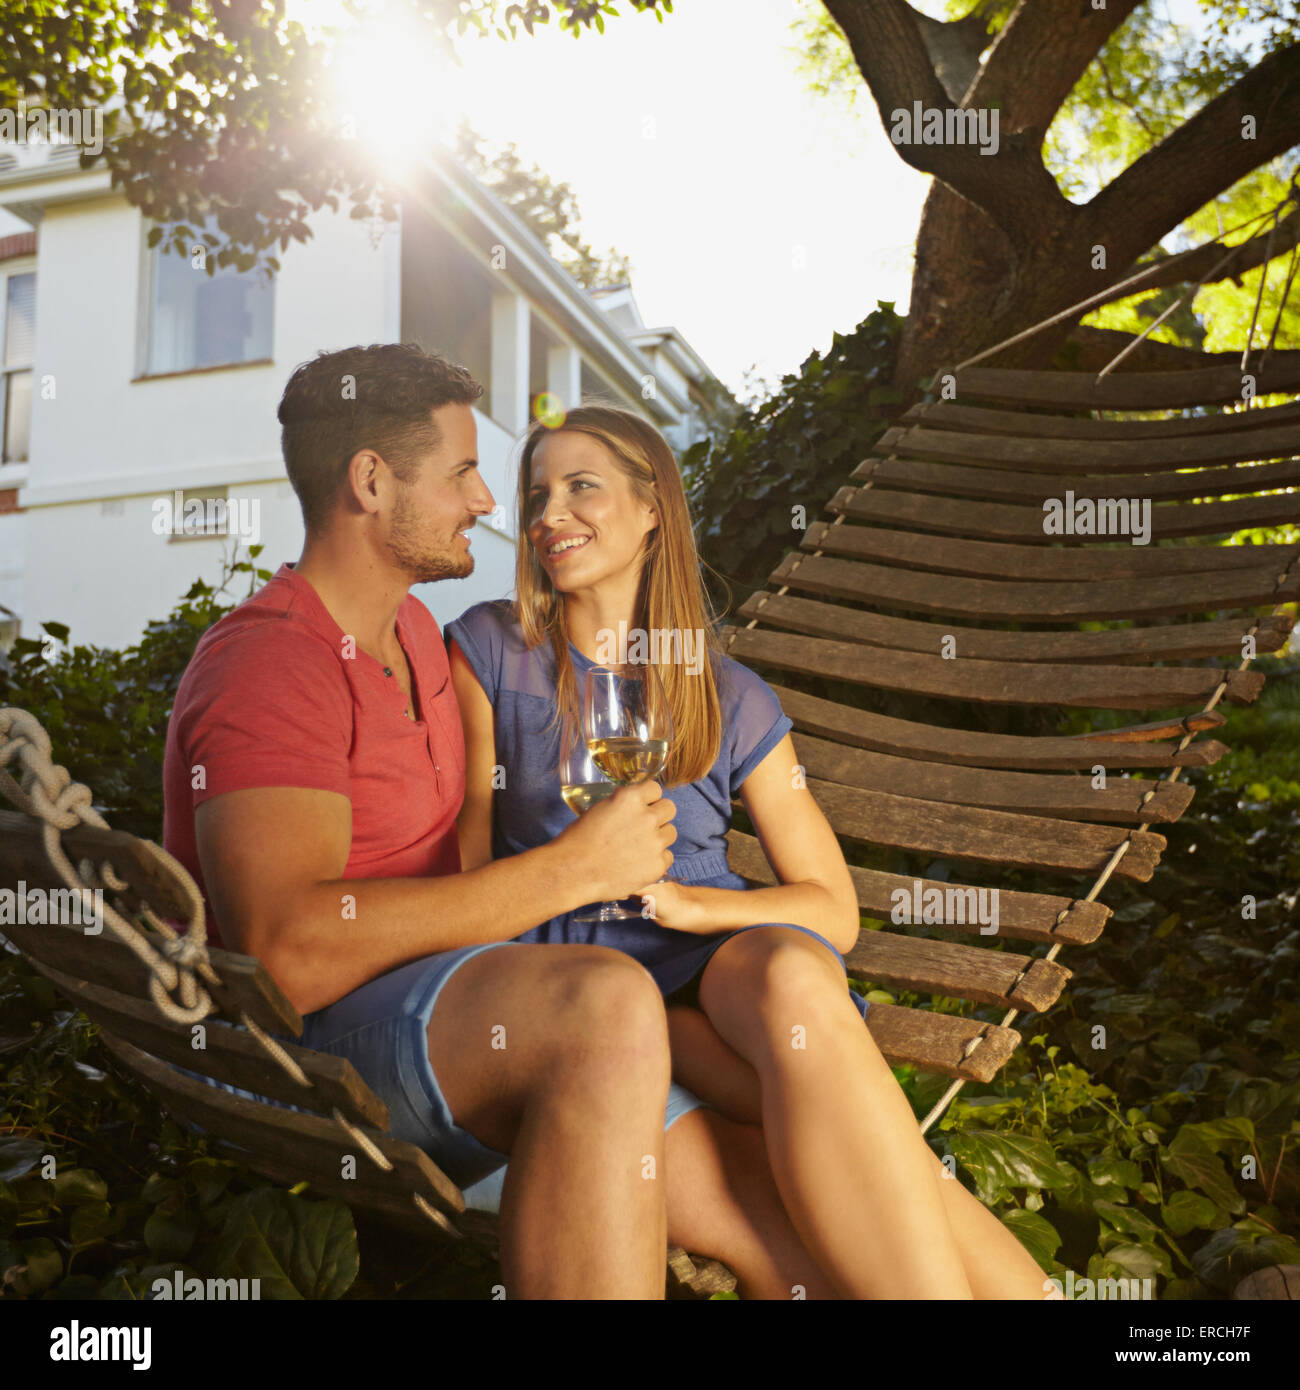 Romántica pareja joven vino tostado mientras está sentado en una hamaca en el patio. Ellos se miran sonrientes y beber Foto de stock